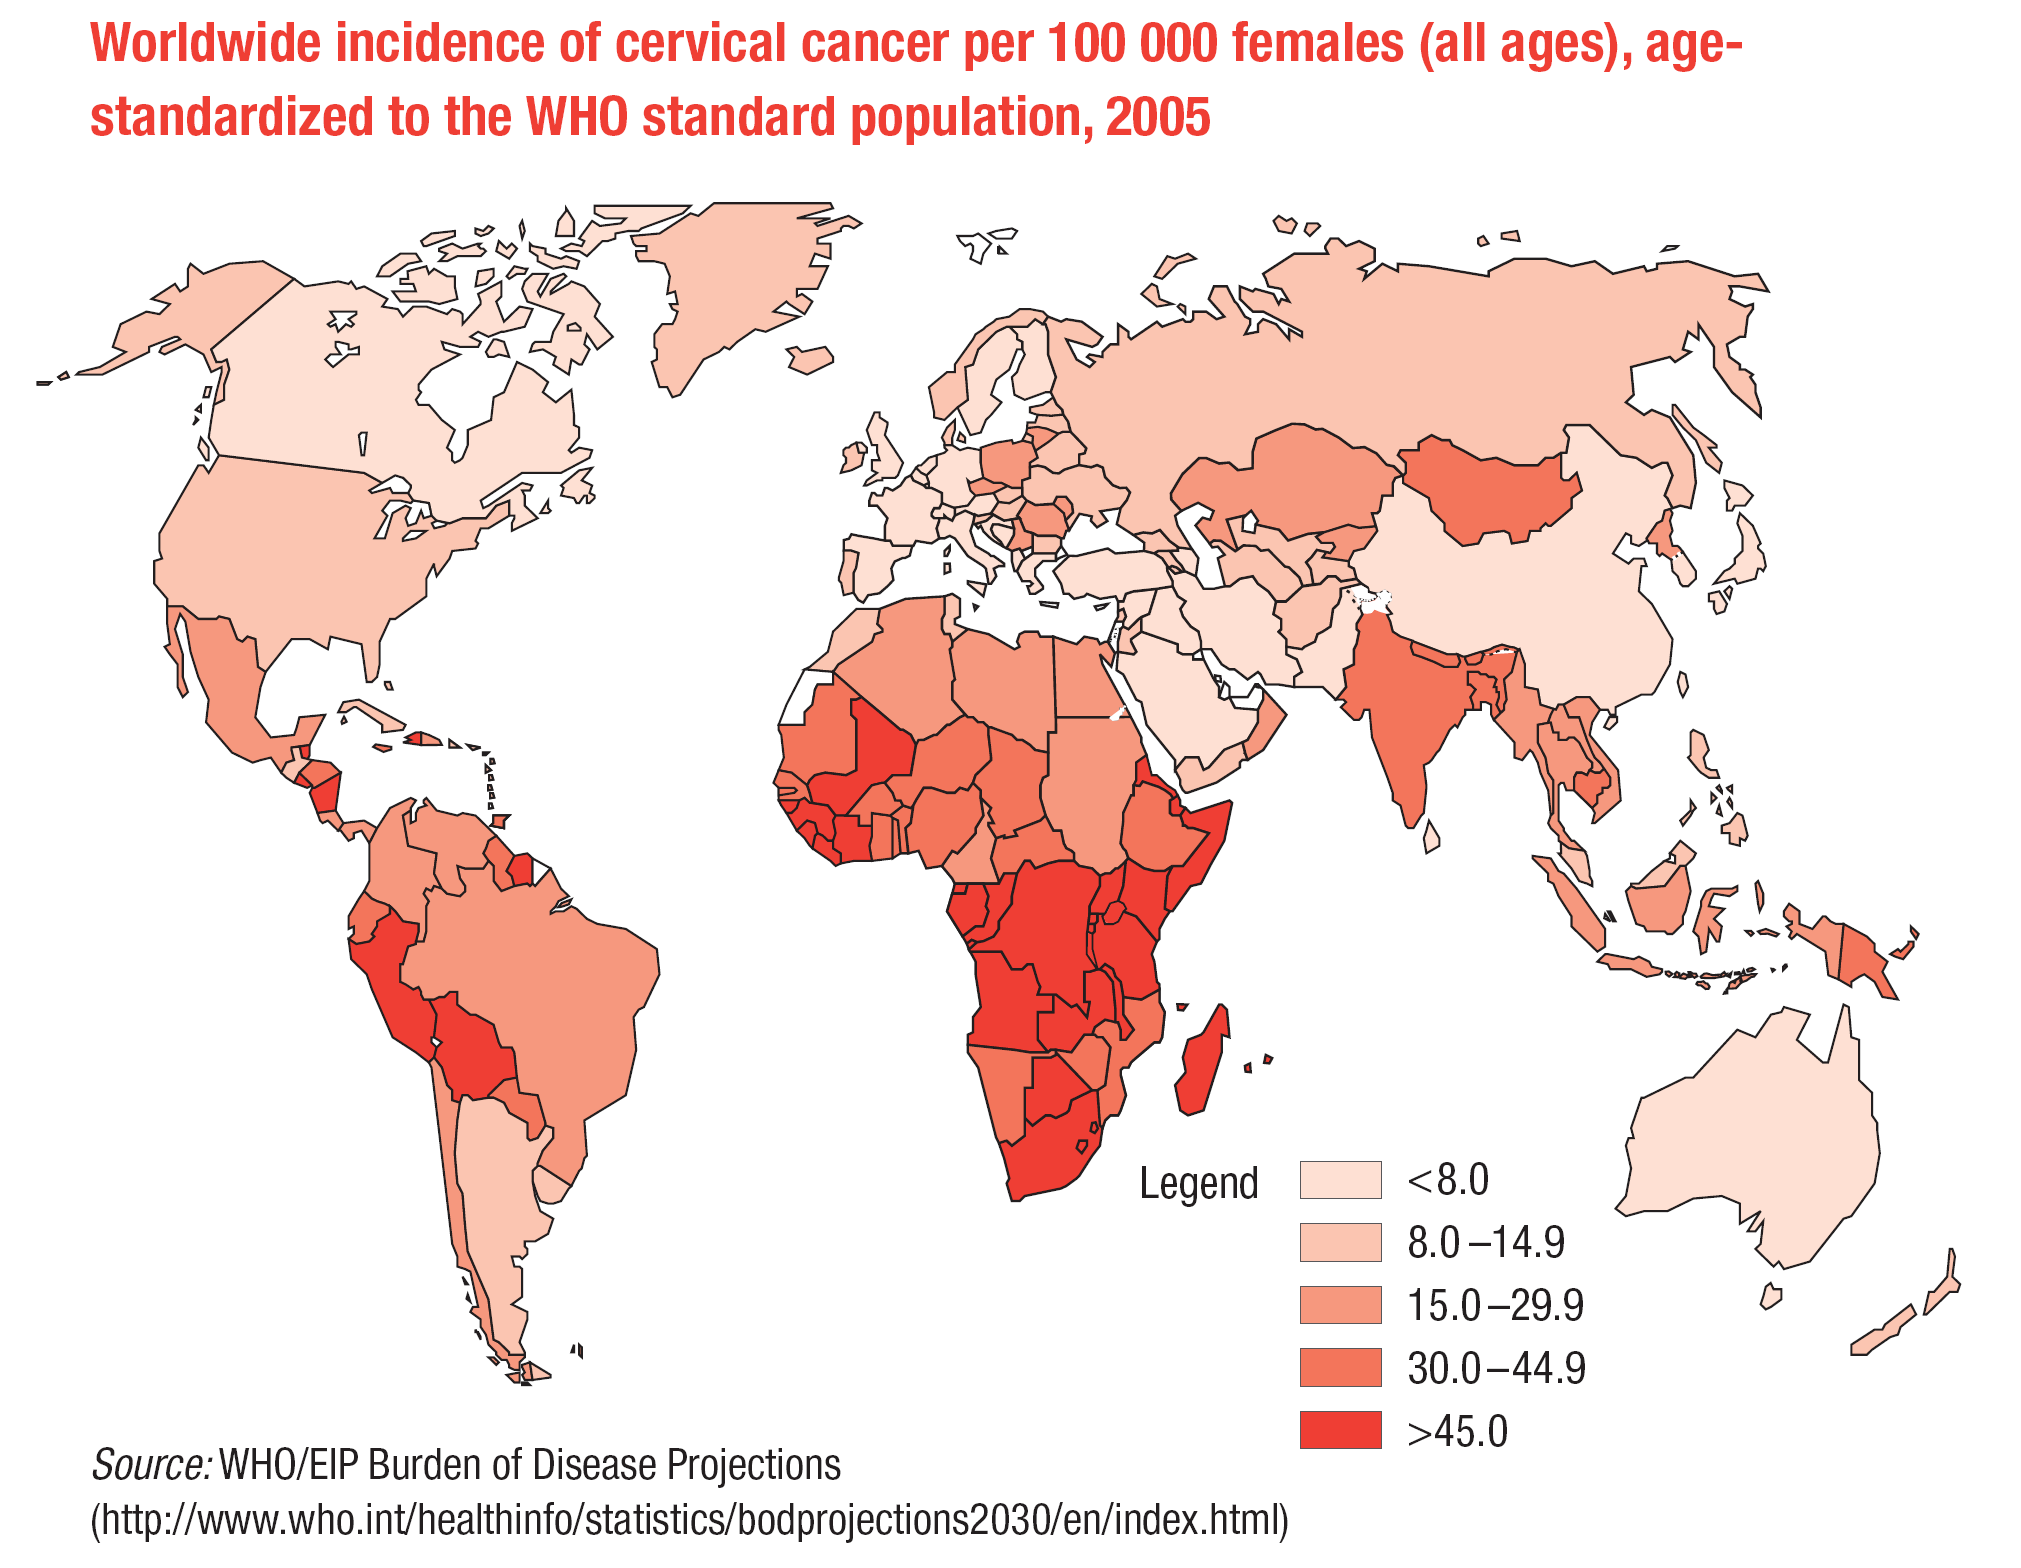 Incidência mundial de câncer cervical por 100.000 mulheres (todas as idades, padronizada) WHO, 2007.